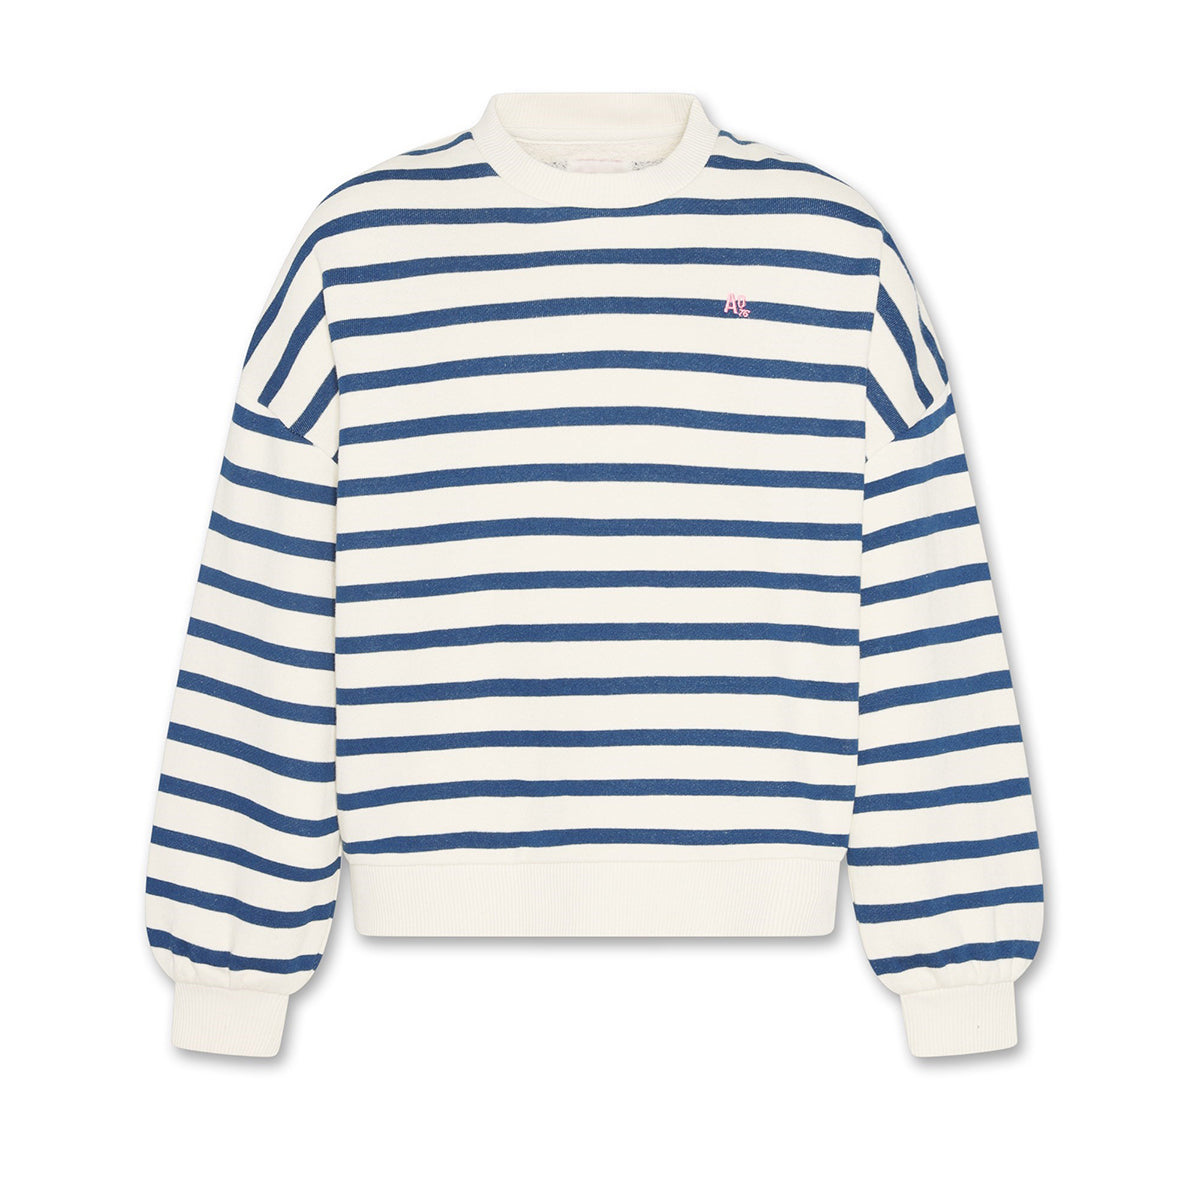 AO76 Ao76 Violeta Stripe Sweater